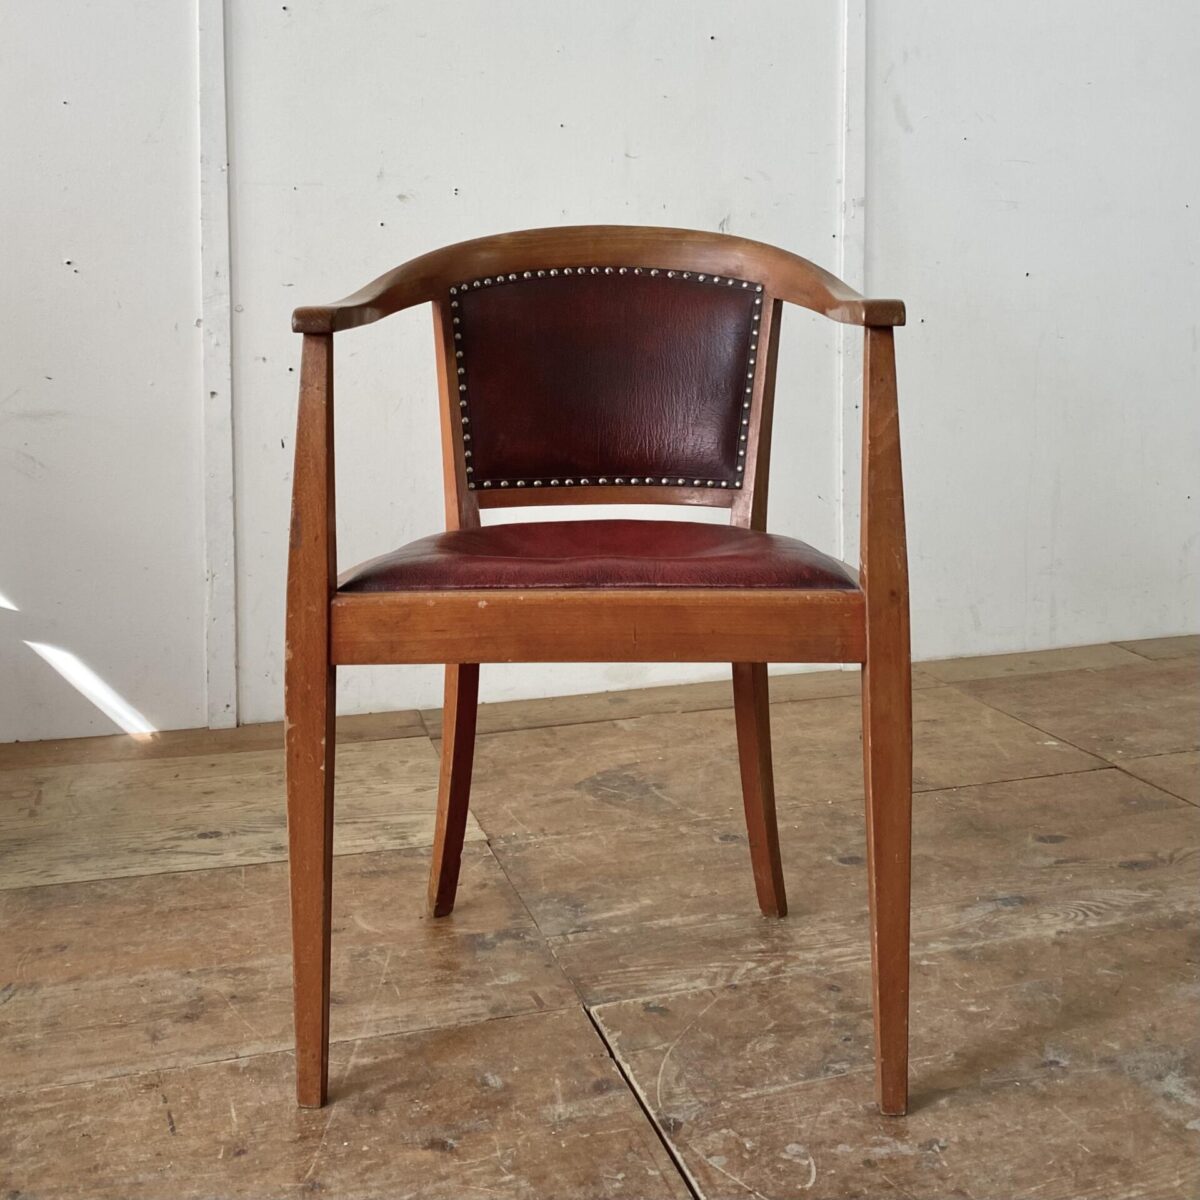 Deuxieme.shop Armlehnstuhl mit rotem Leder. 55x55cm Höhe 83cm Sitzhöhe 45cm. Der Stuhl ist in stabilem Vintage Zustand mit Alterspatina, das Sitzpolster ist durchgesessen. 